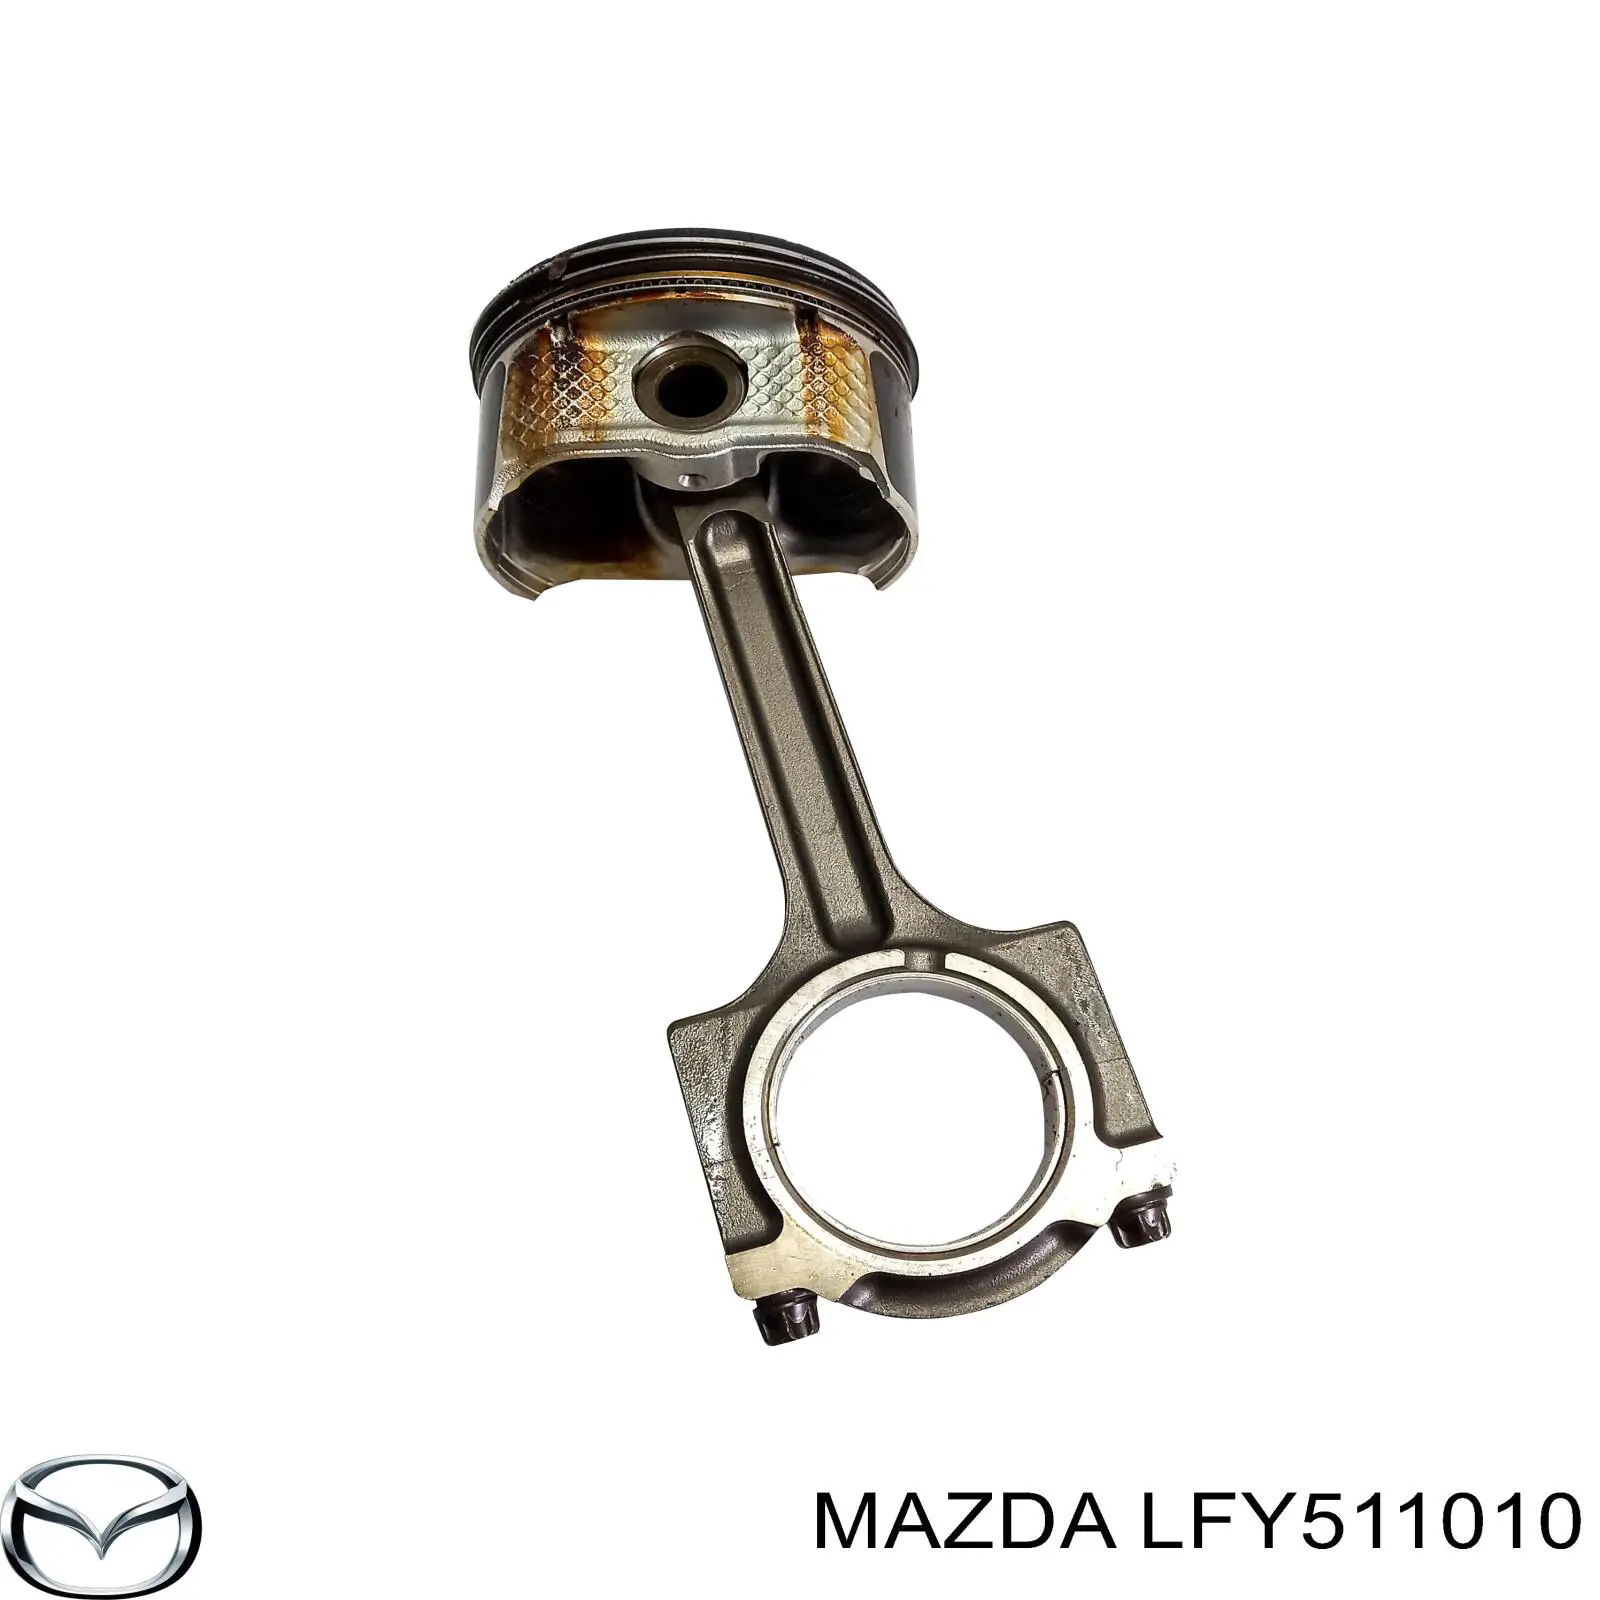 Поршень в комплекте на 1 цилиндр, 2-й ремонт (+0,50) на Mazda 6 GG